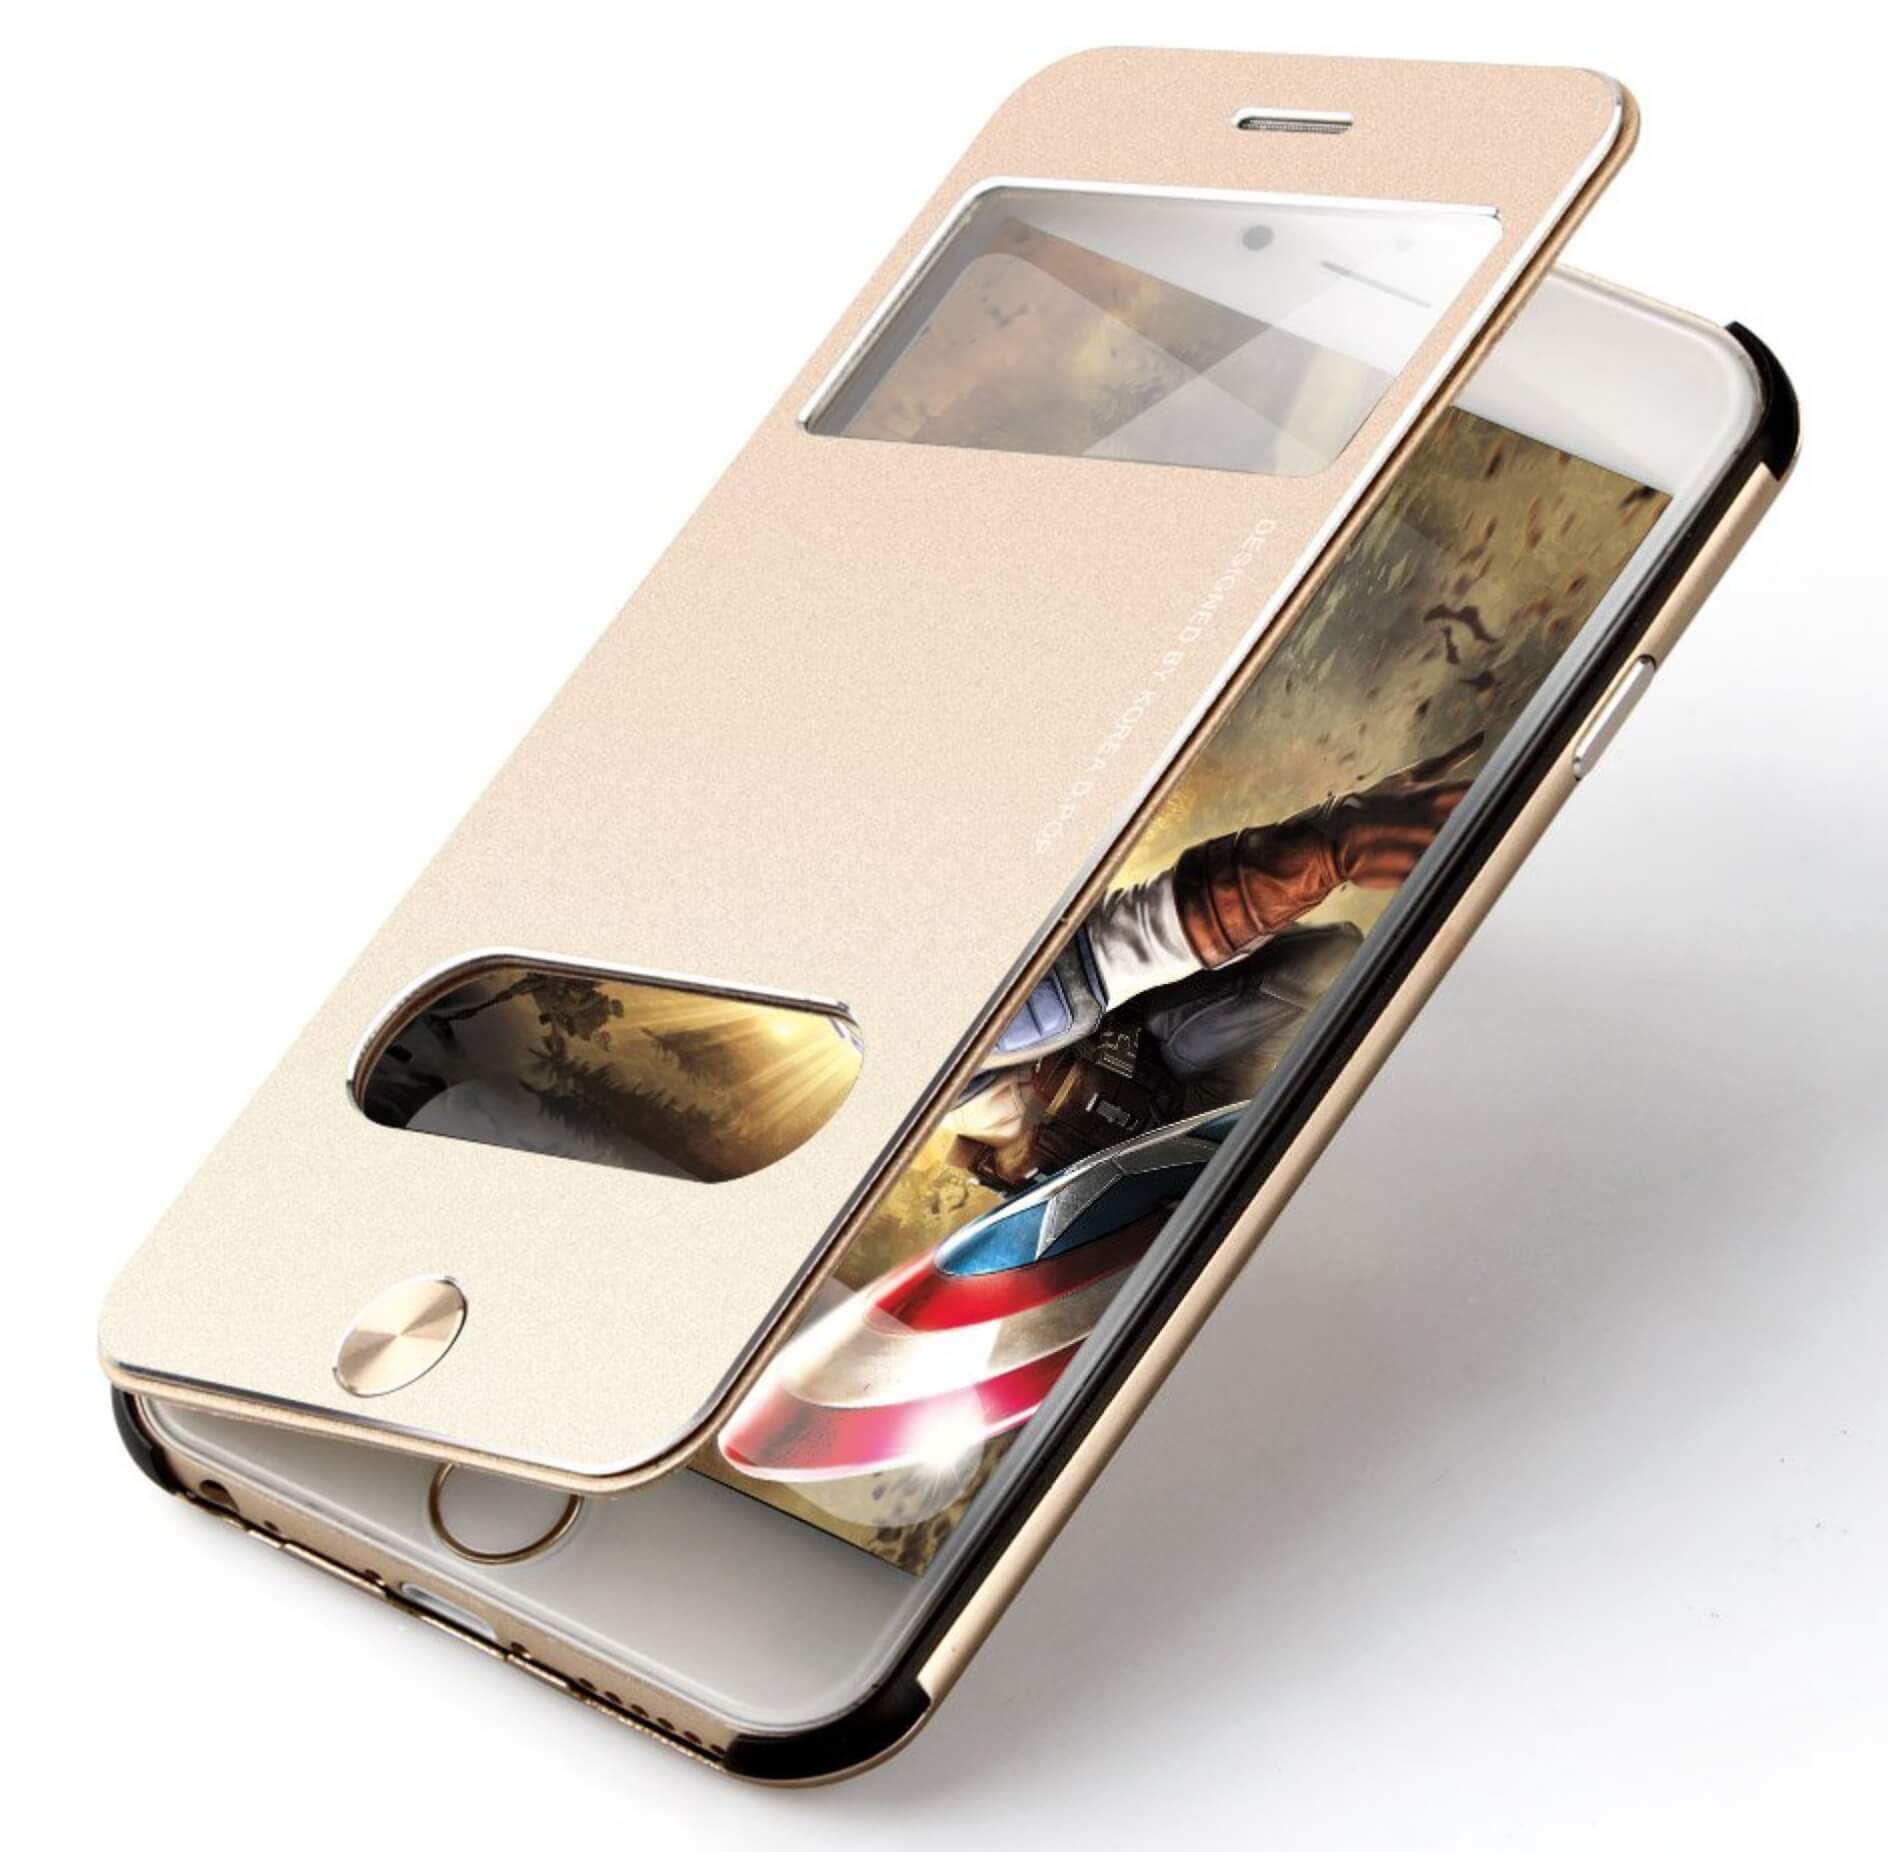 Handyhülle für iPhone aus Aluminium Gold / iPhone 6 Plus/6s Plus